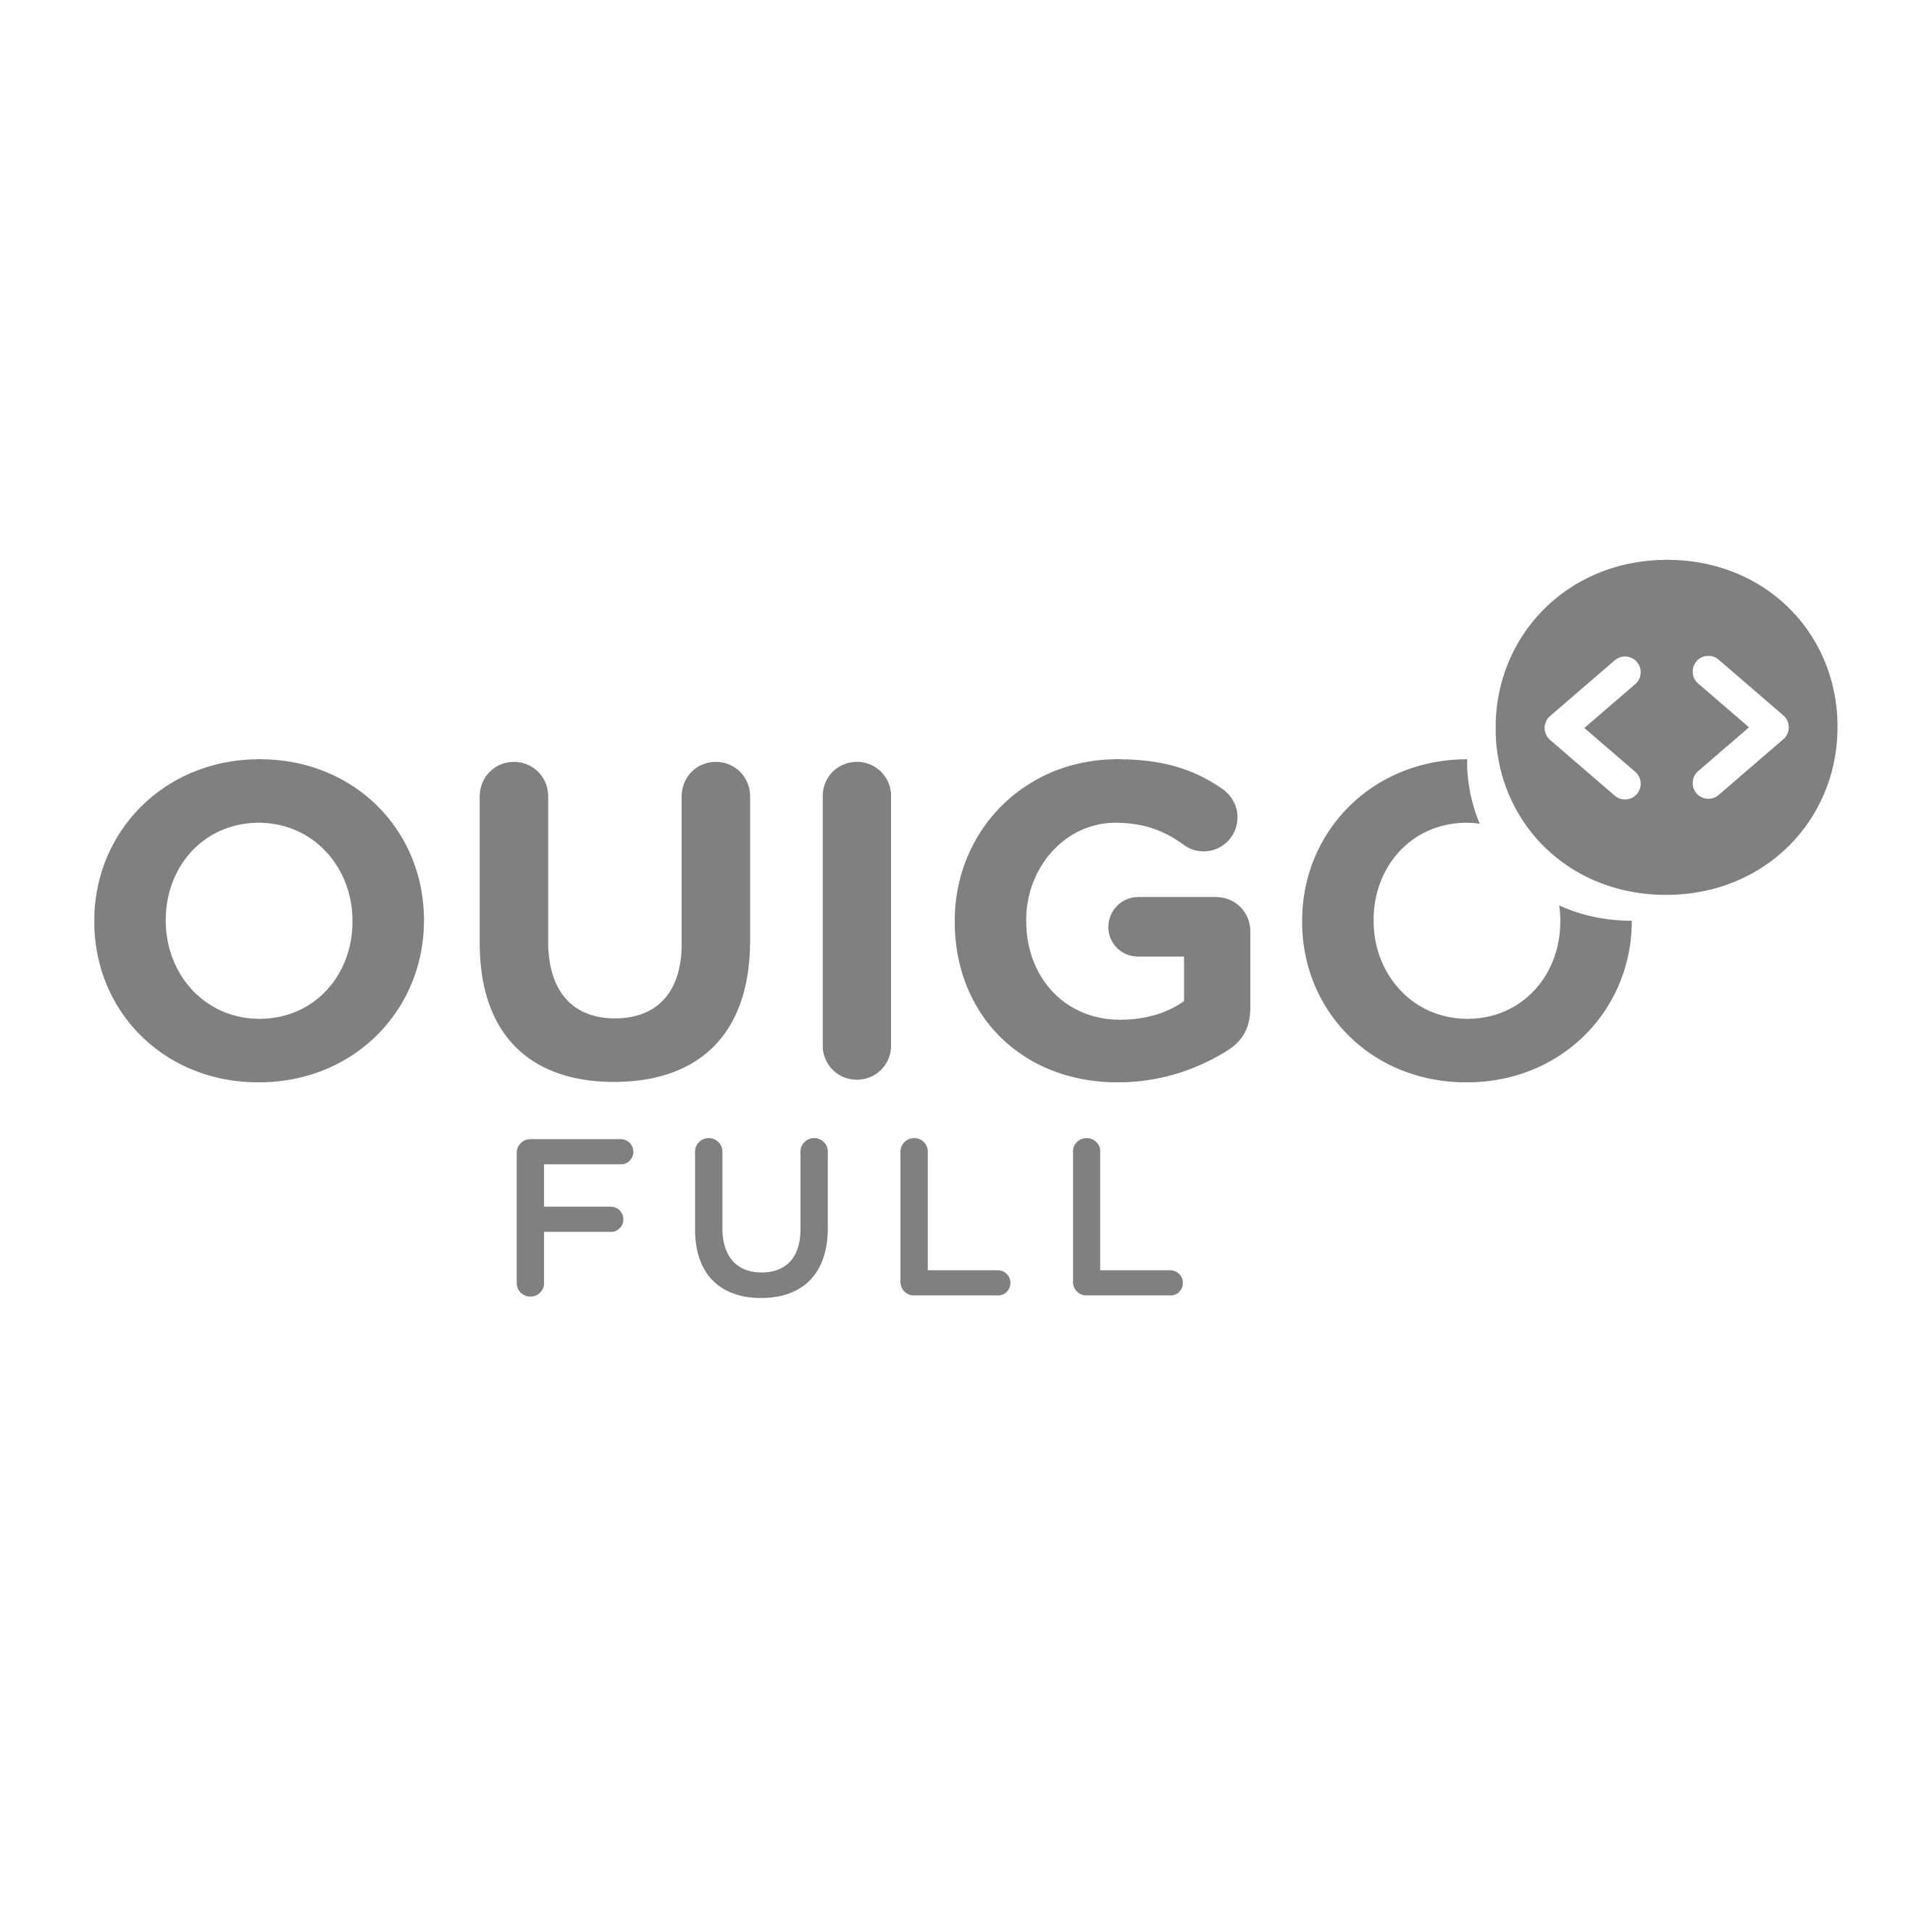 OUIGO FULL Logo